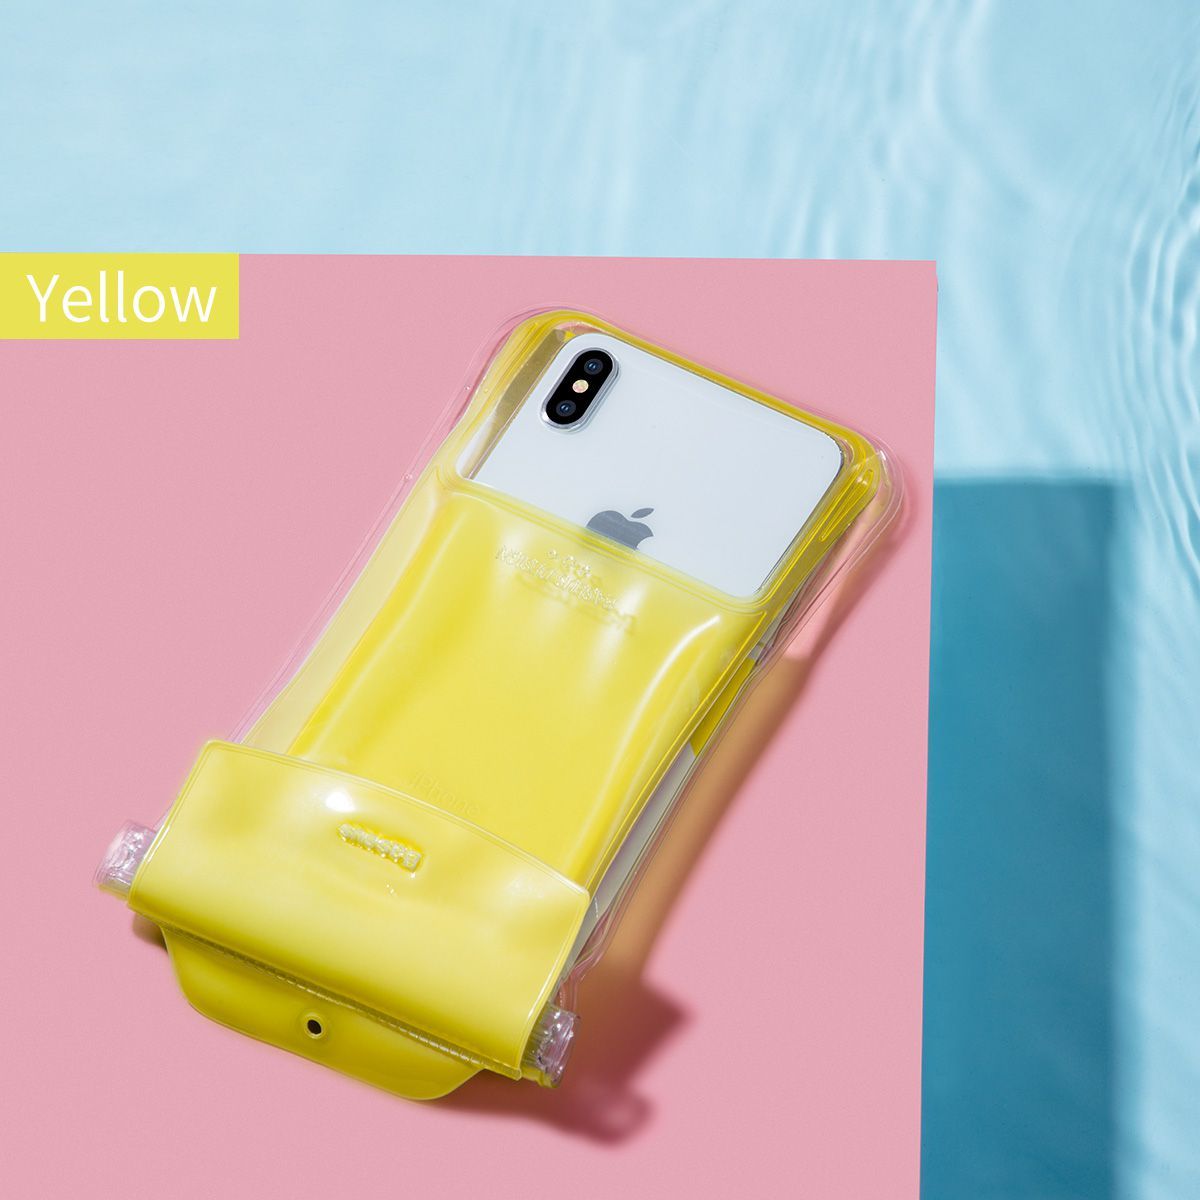  Túi hơi 4 lớp chống nước, chống chìm đa năng Baseus Safe Airbag Waterproof Case cho iPhone / Samsung (Waterproof Swimming Surfing Cover) 